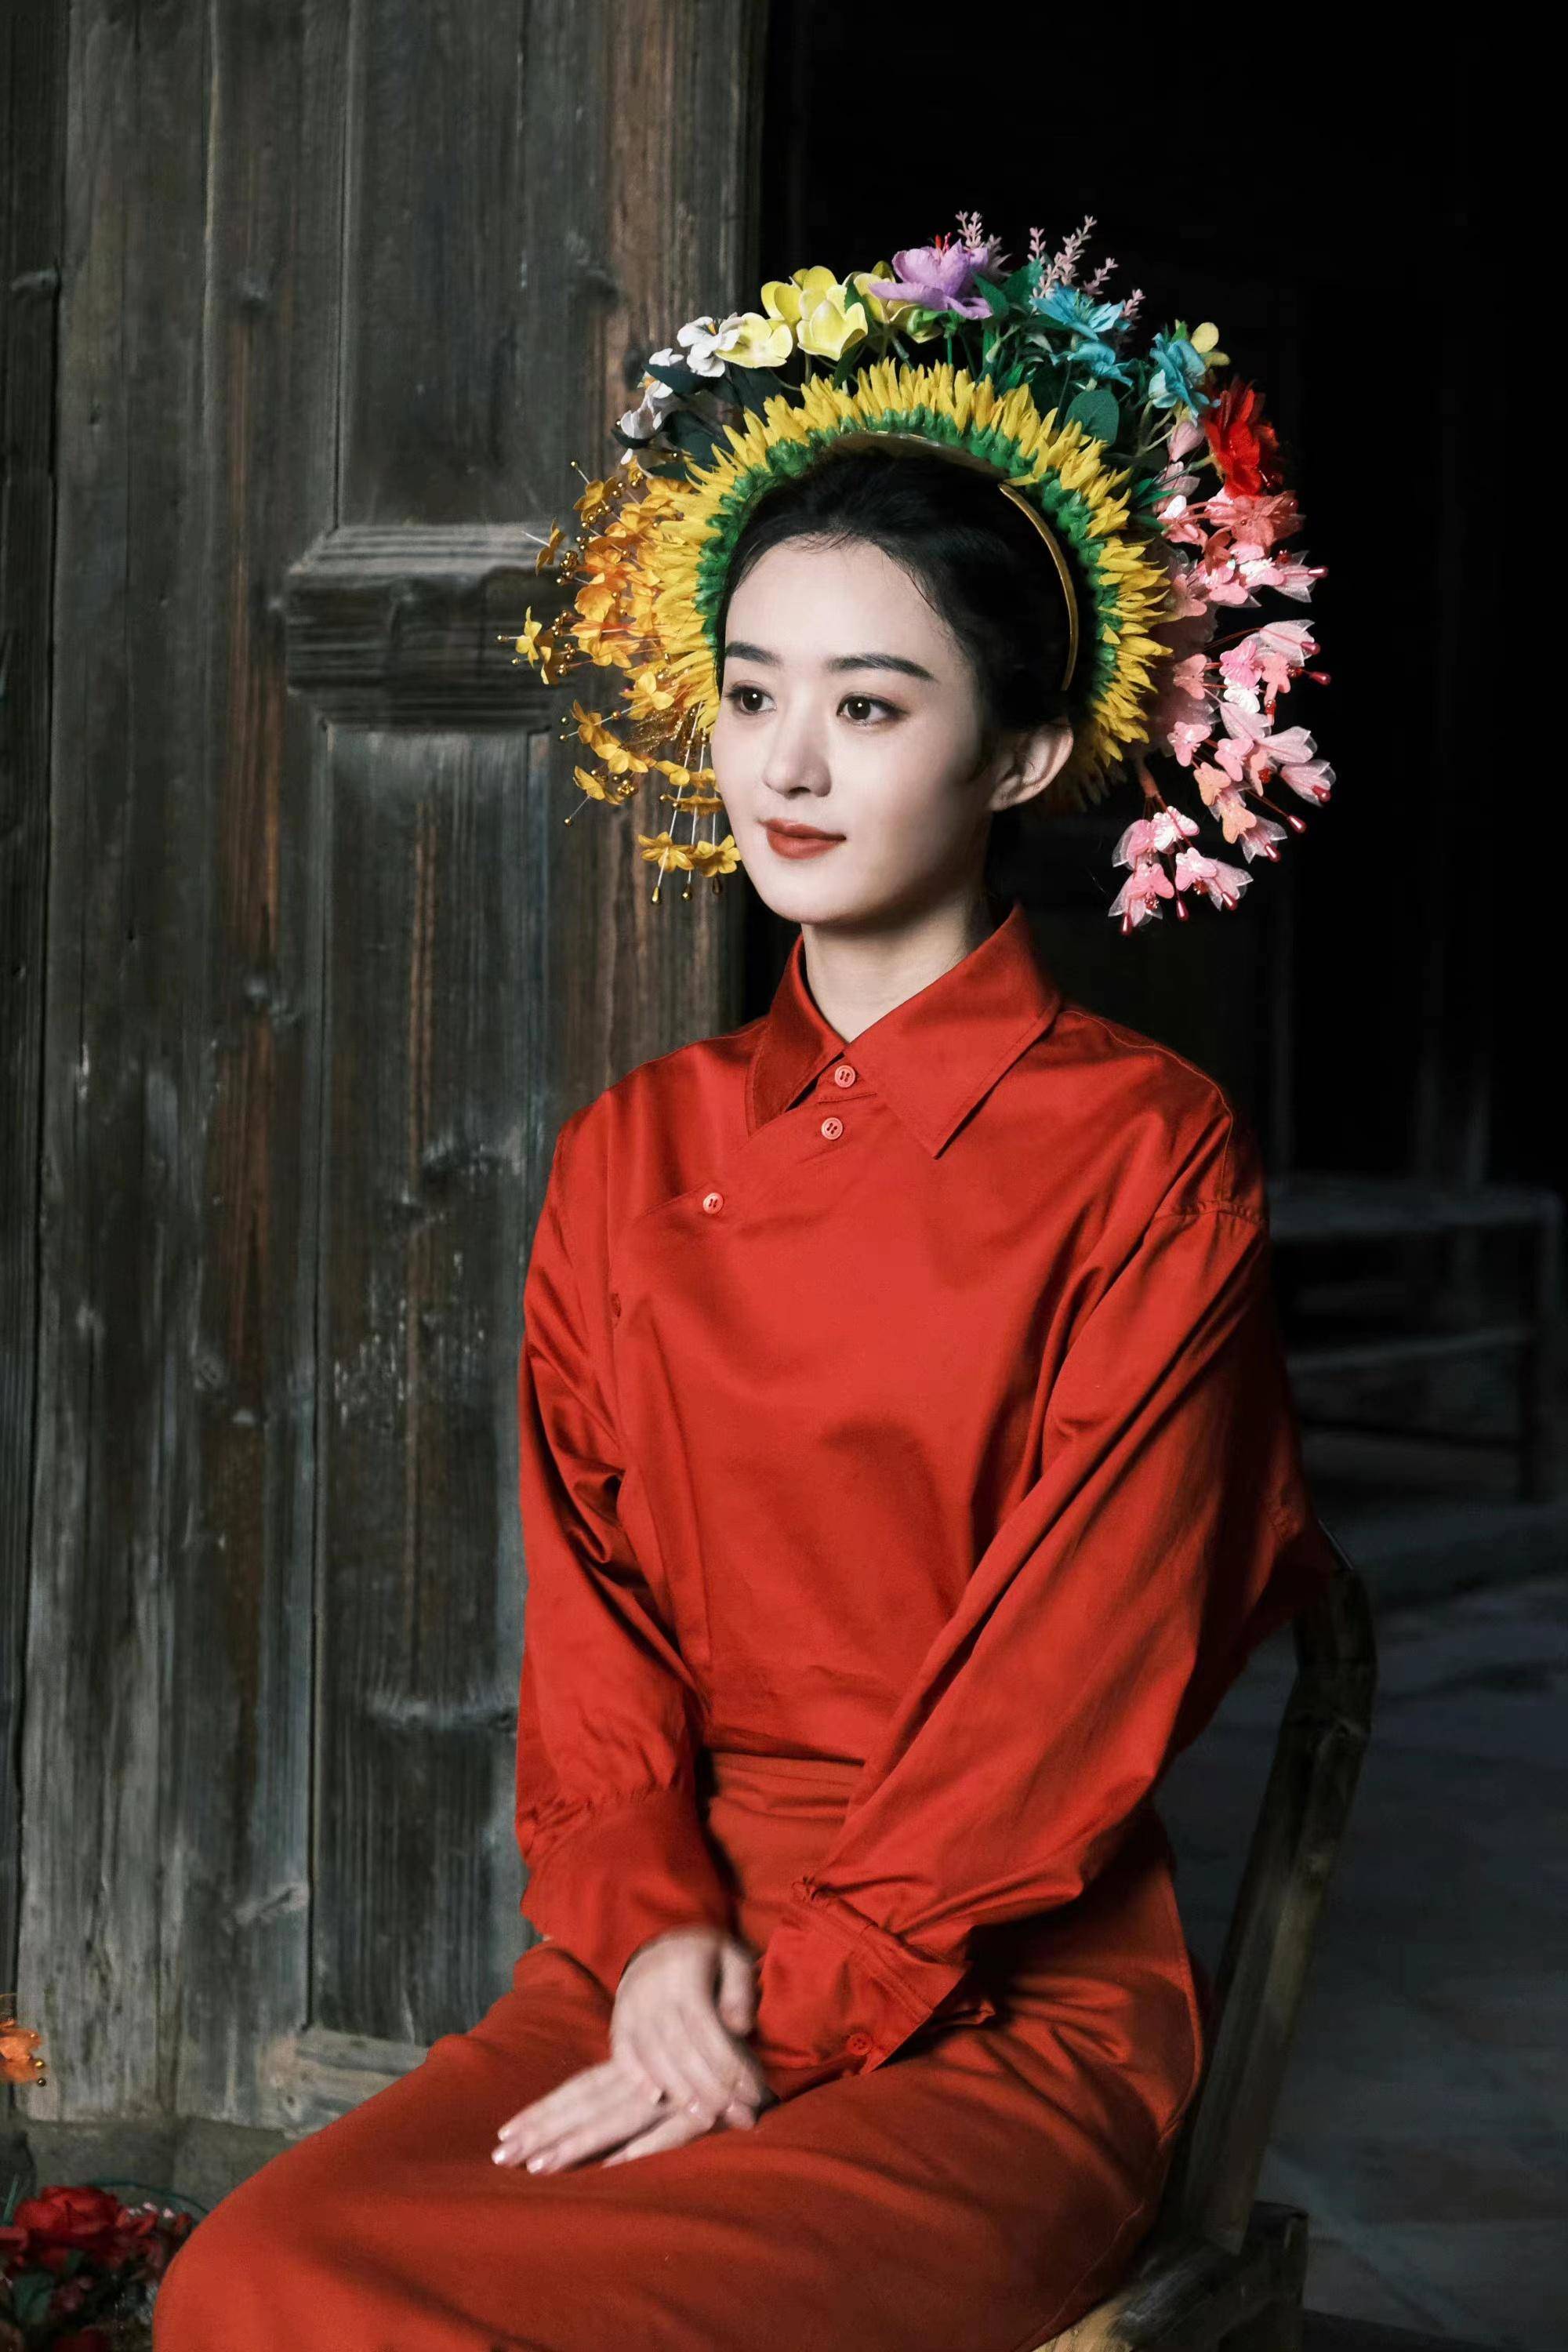 穿中国红头上插满鲜花,央视脸超惊艳